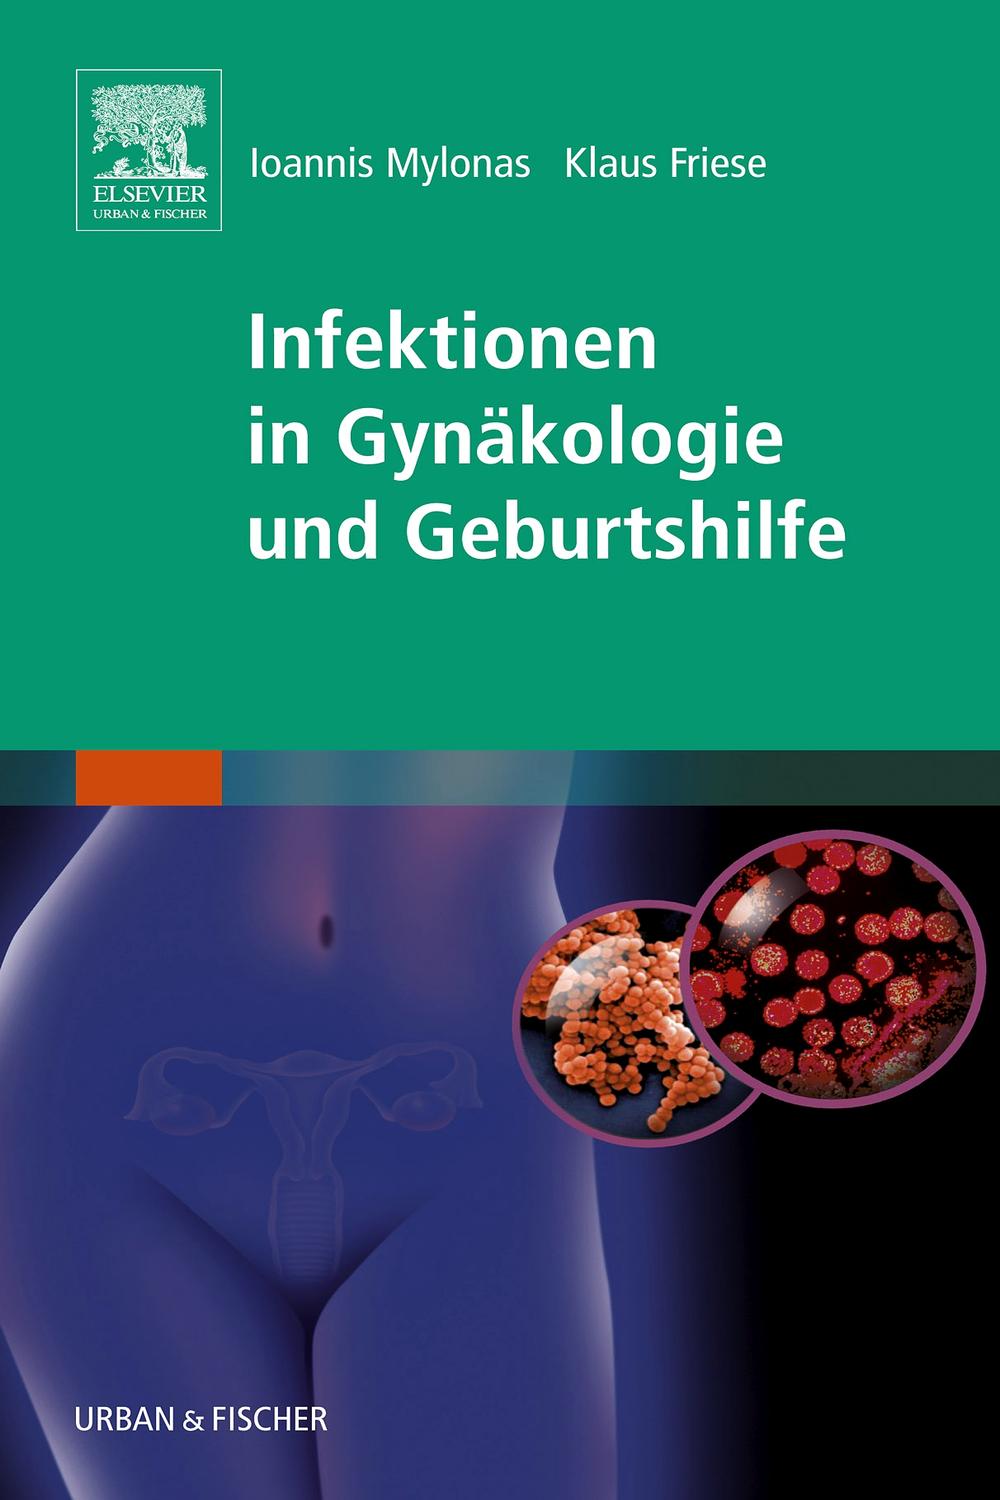 Infektionen in Gynäkologie und Geburtshilfe - Ioannis Mylonas, Klaus Friese